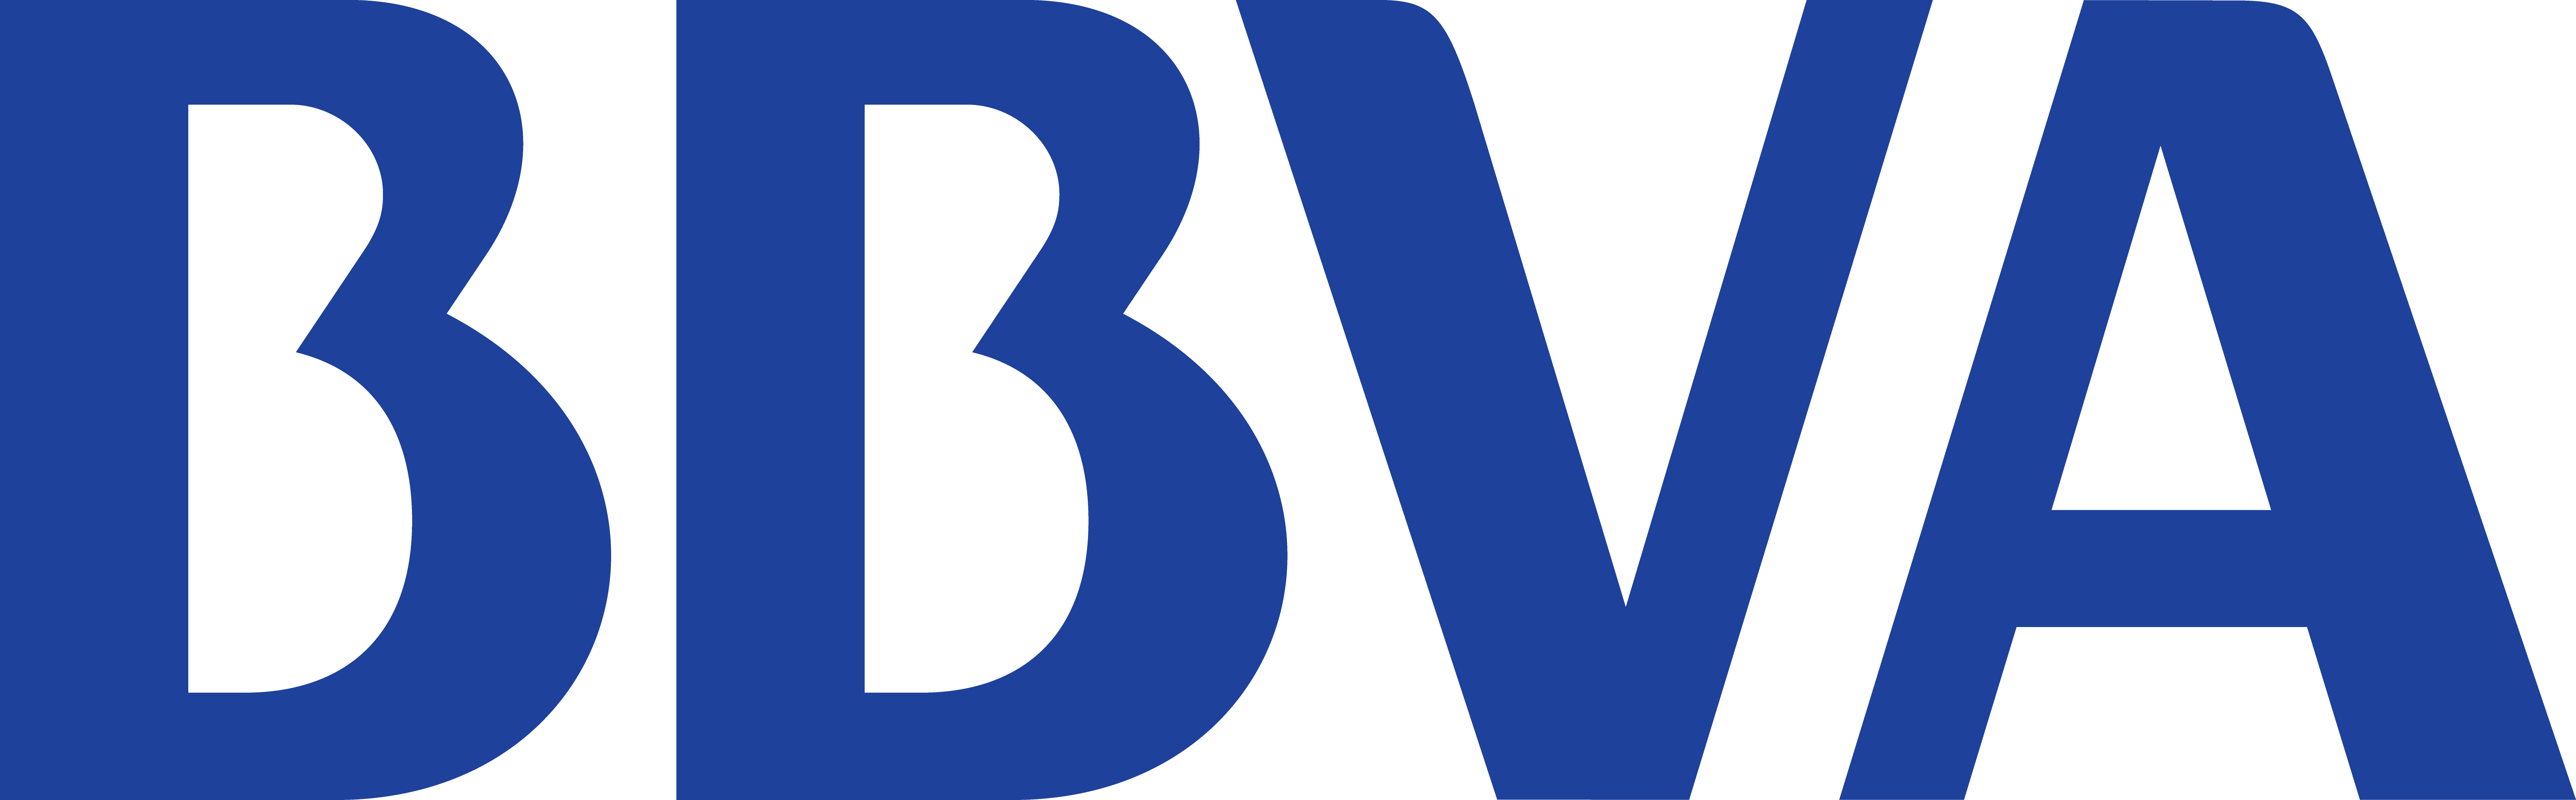 BBVA unifica su marca en México y en todo el mundo; también cambia su logo